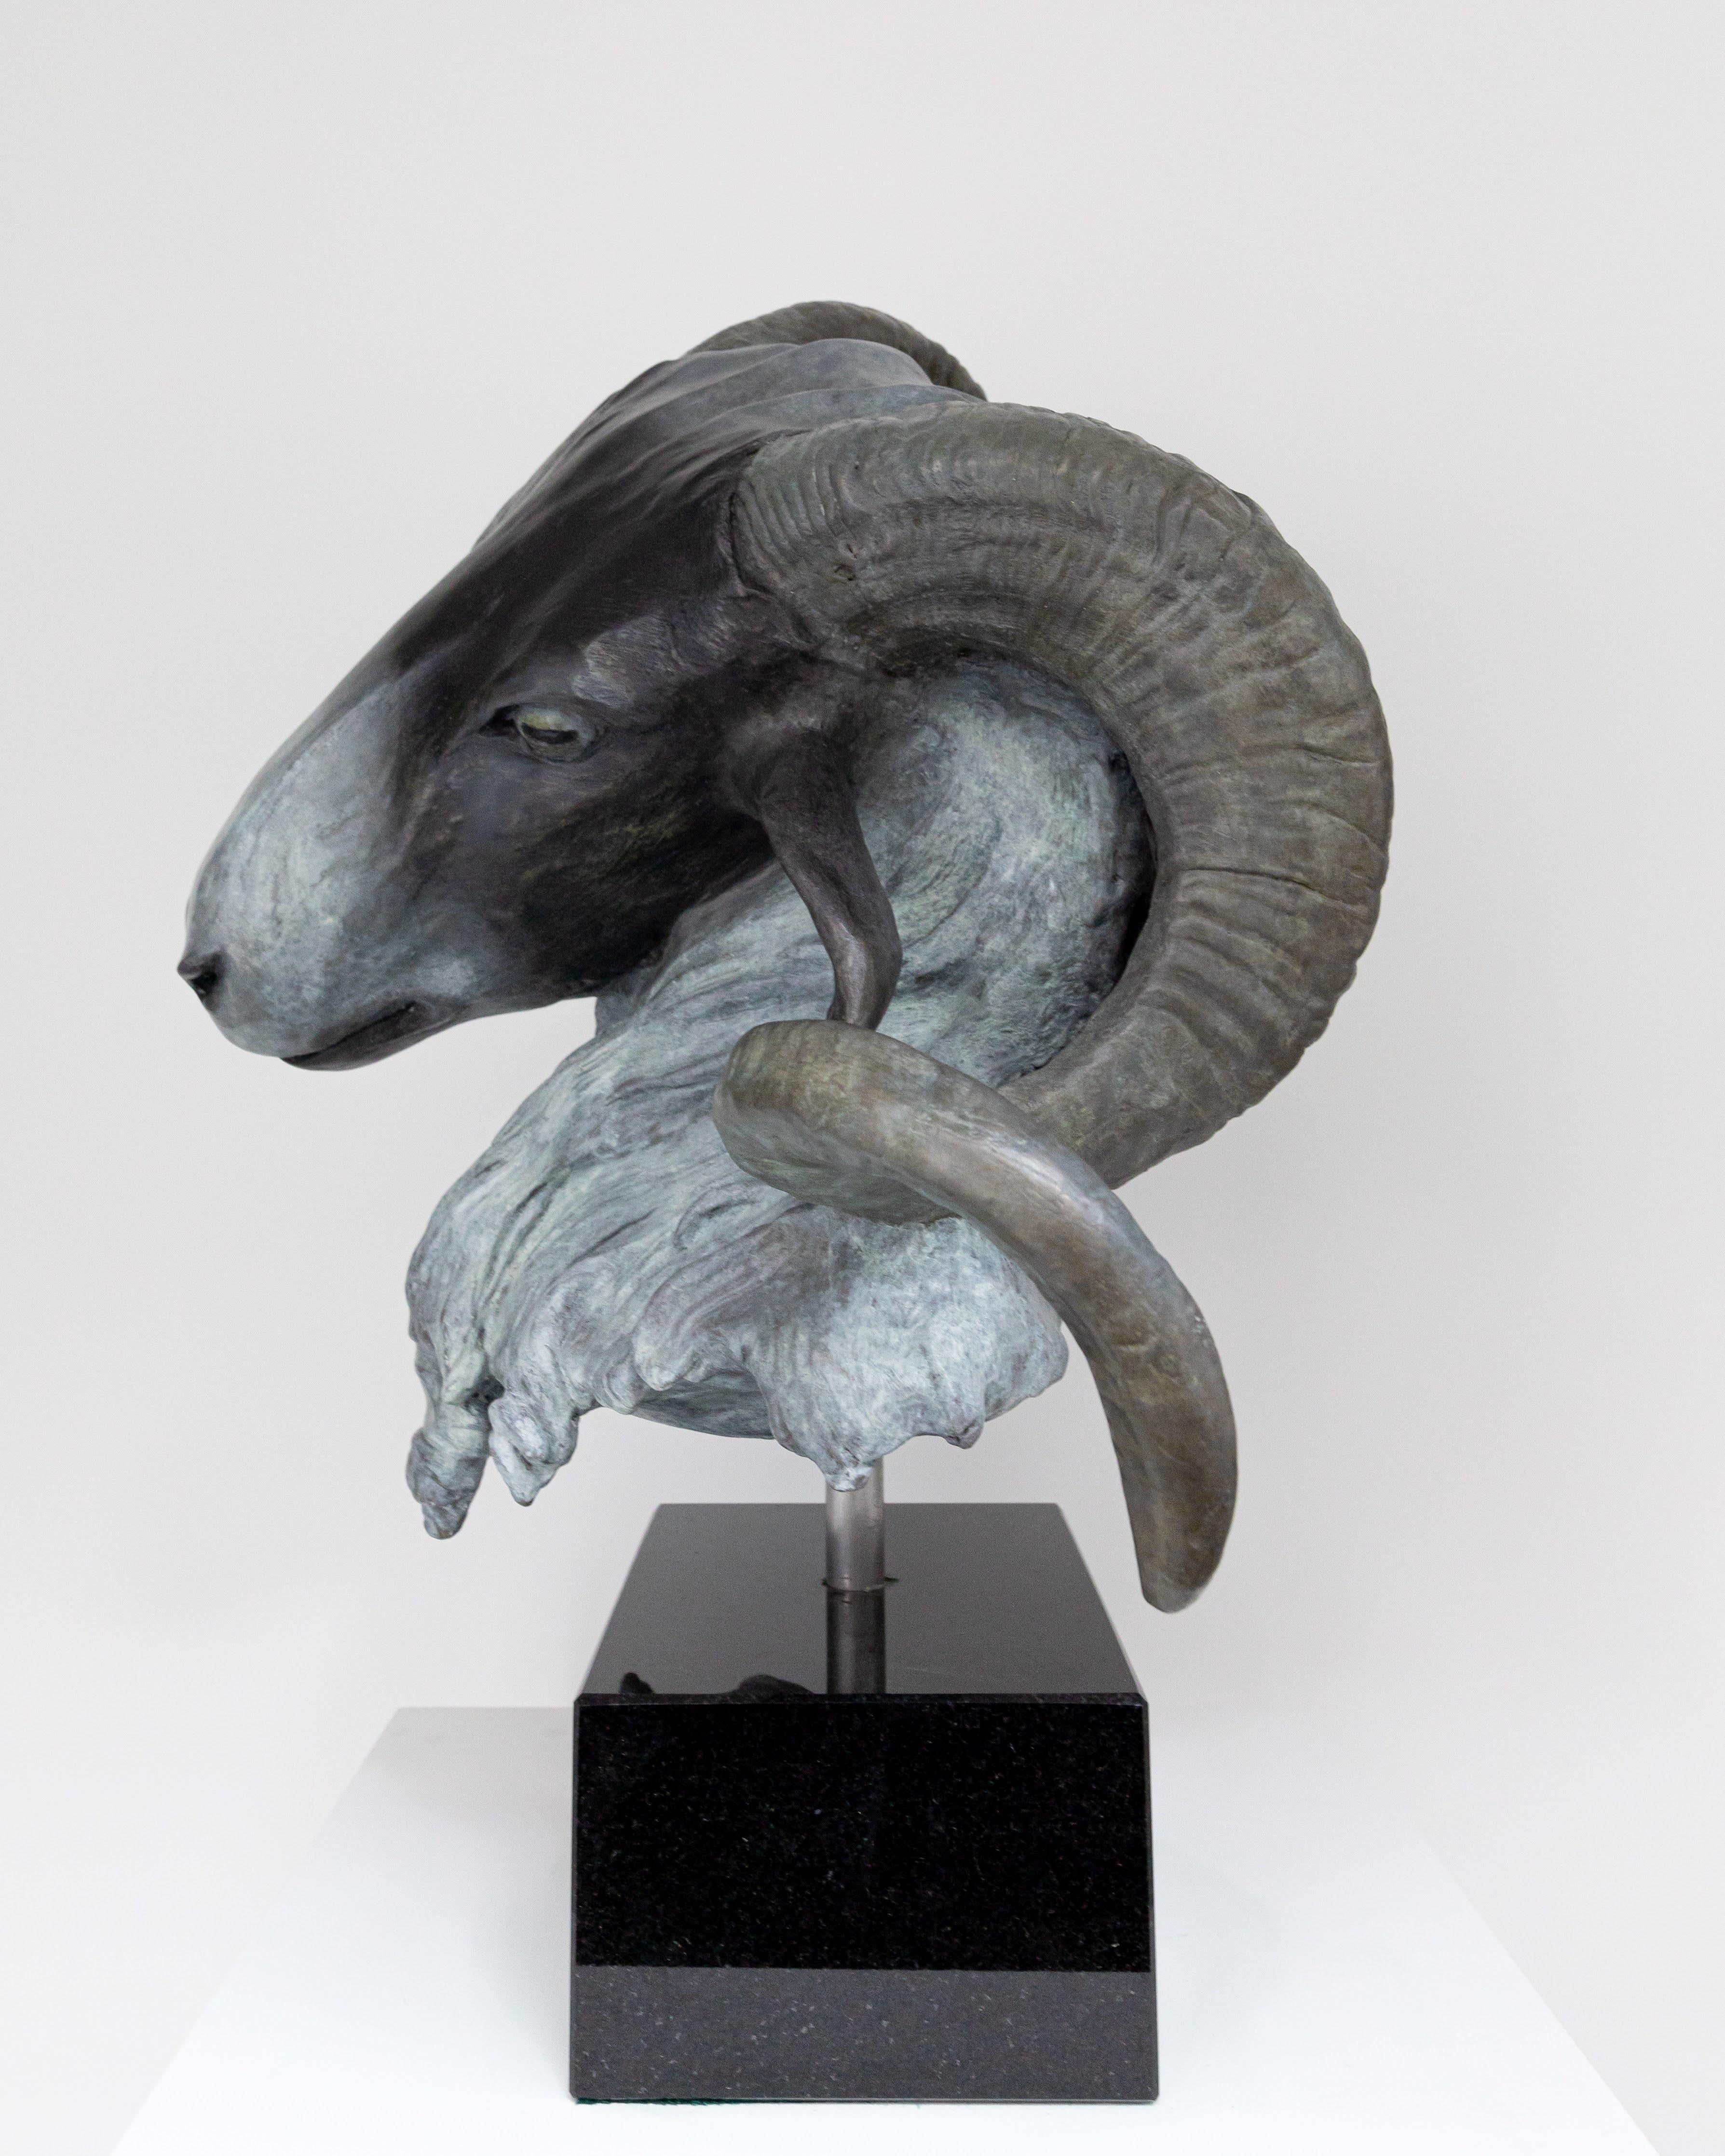 Rams écossais à facettes noires (Ovis Aries) - Naturalisme Sculpture par Barry Davies